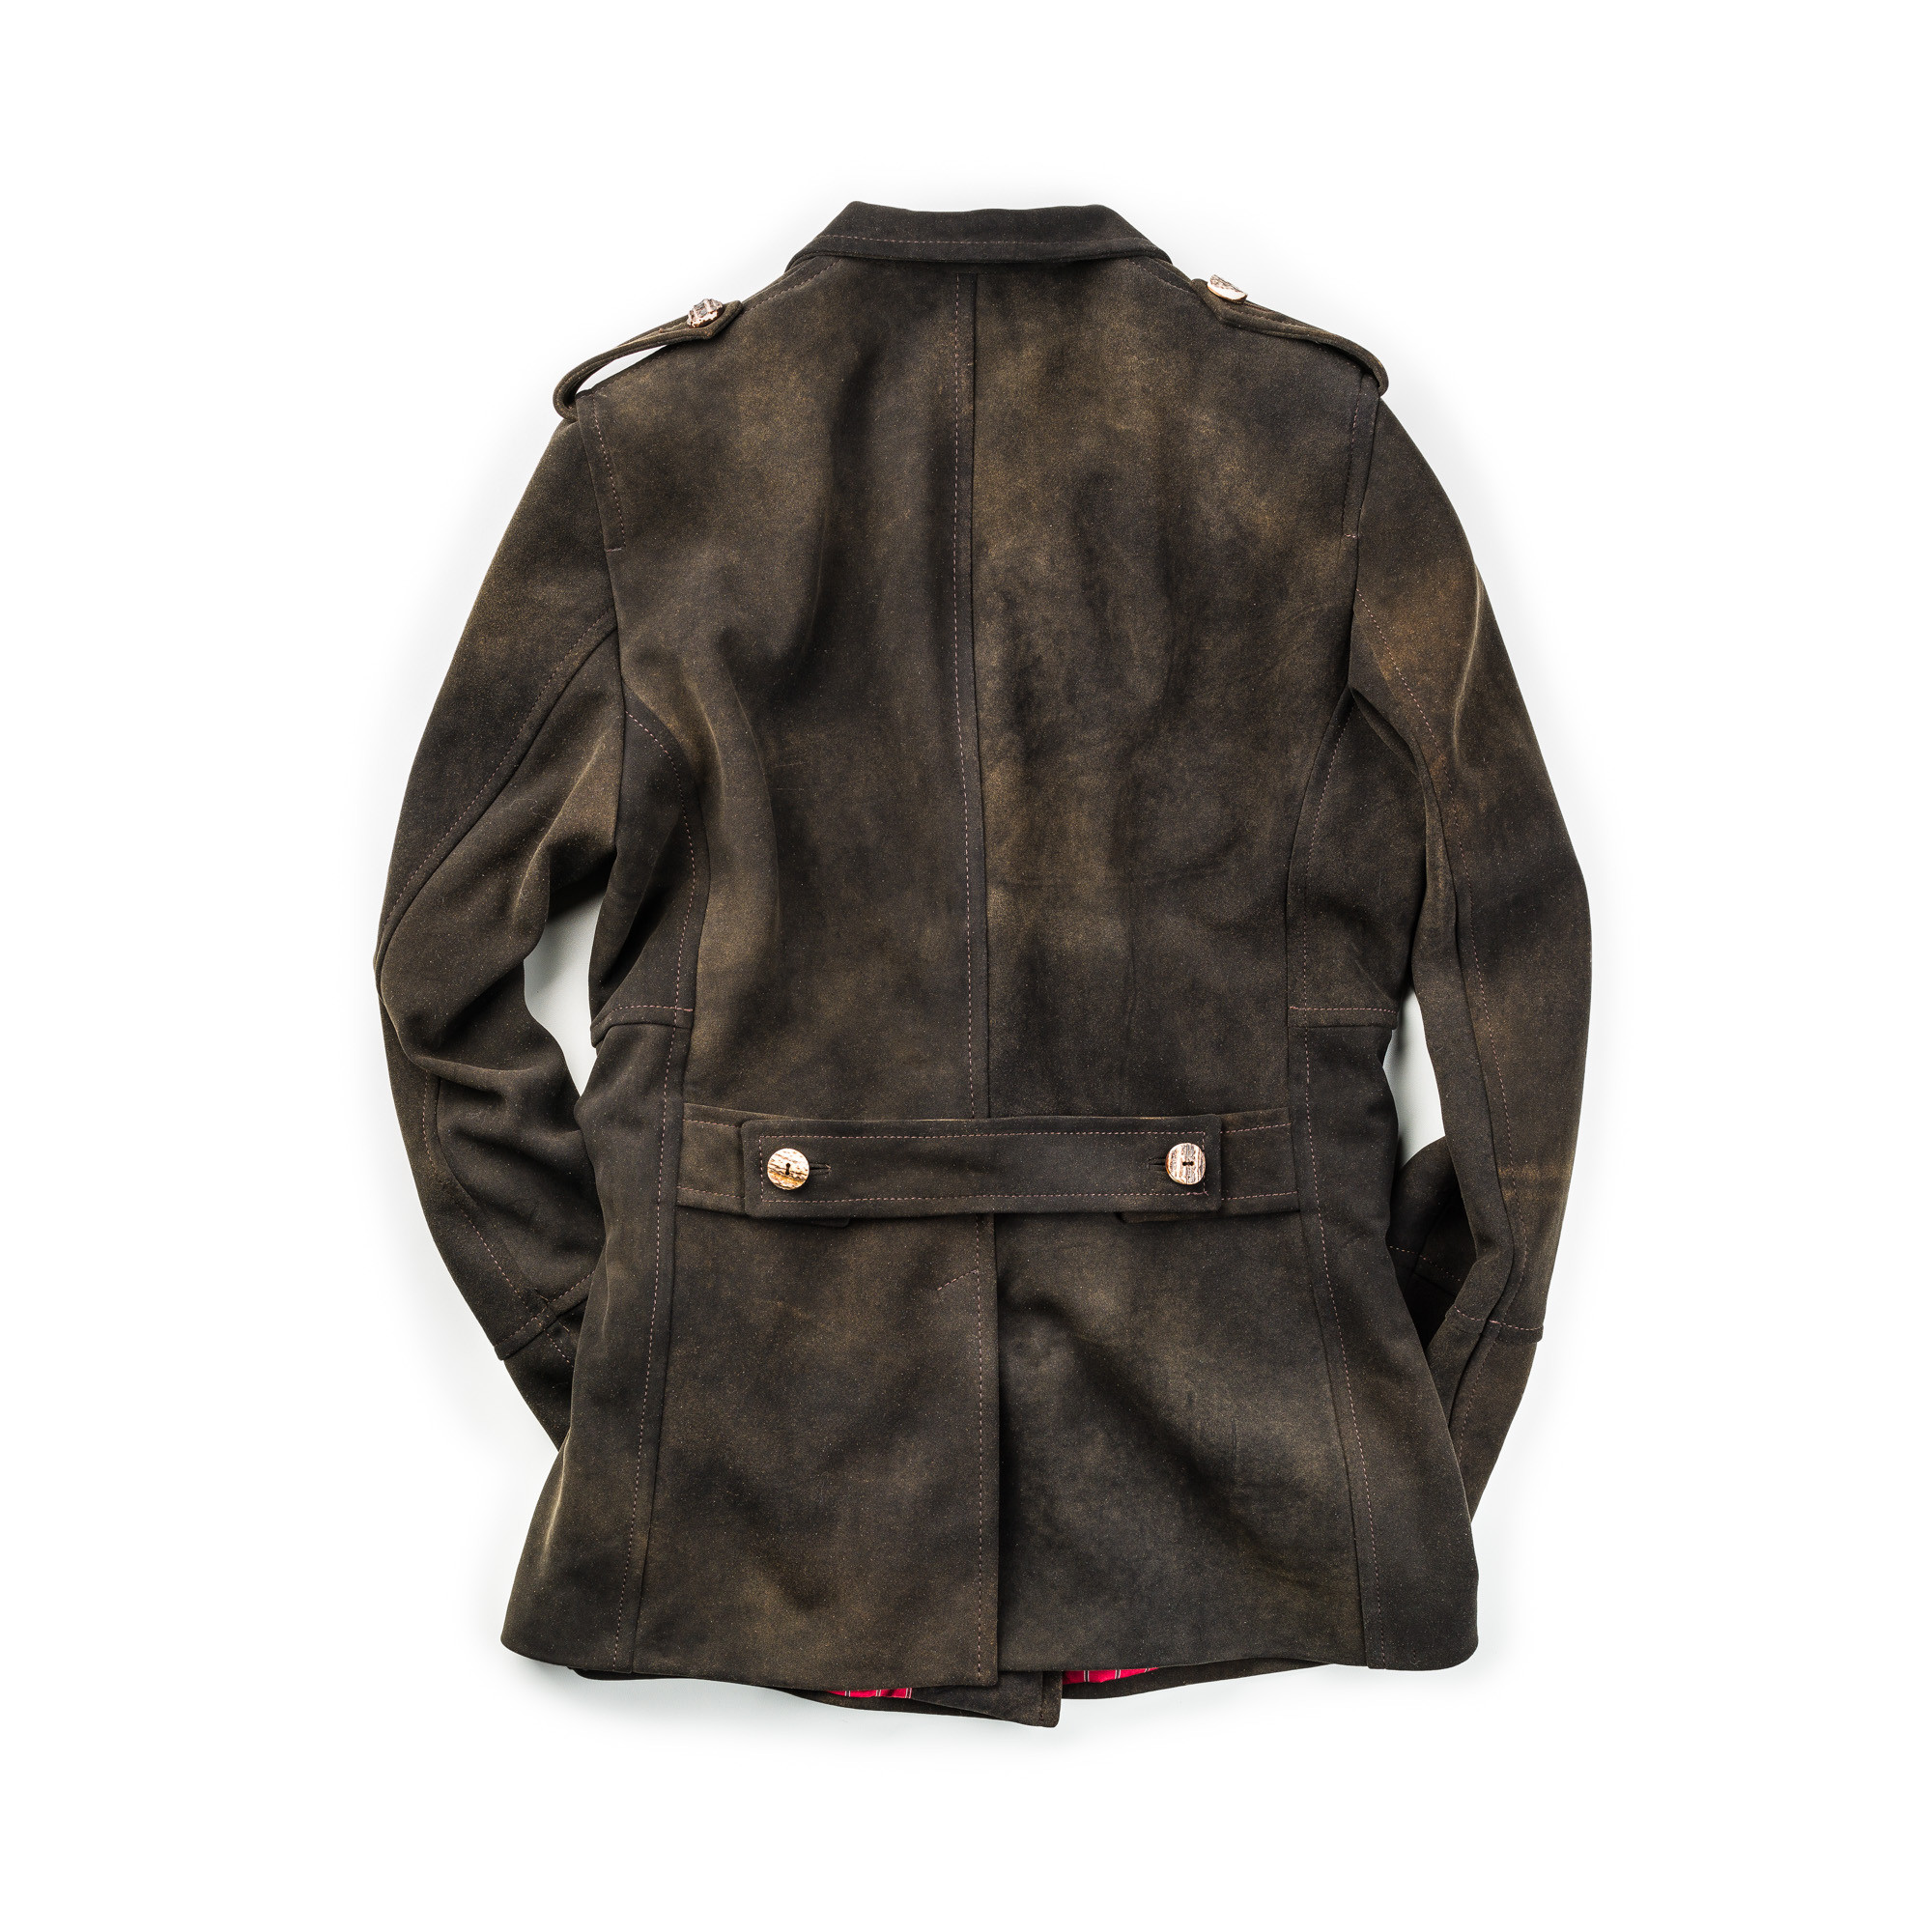 Meindl - Men's Leather Whistler Jacket